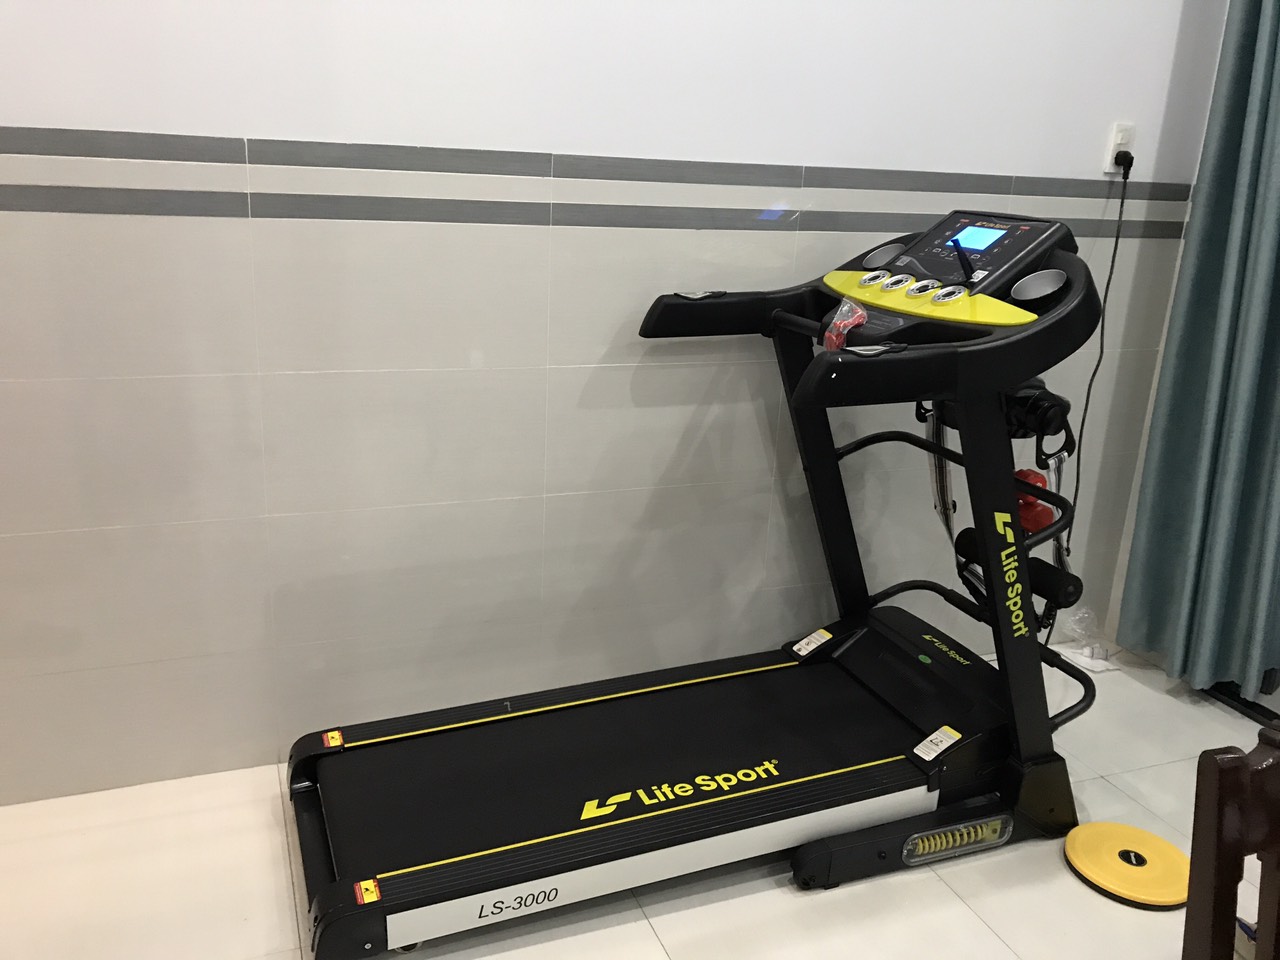 Máy chạy bộ Lifesport LS-3000 - Xây dựng phòng gym ngay tại nhà